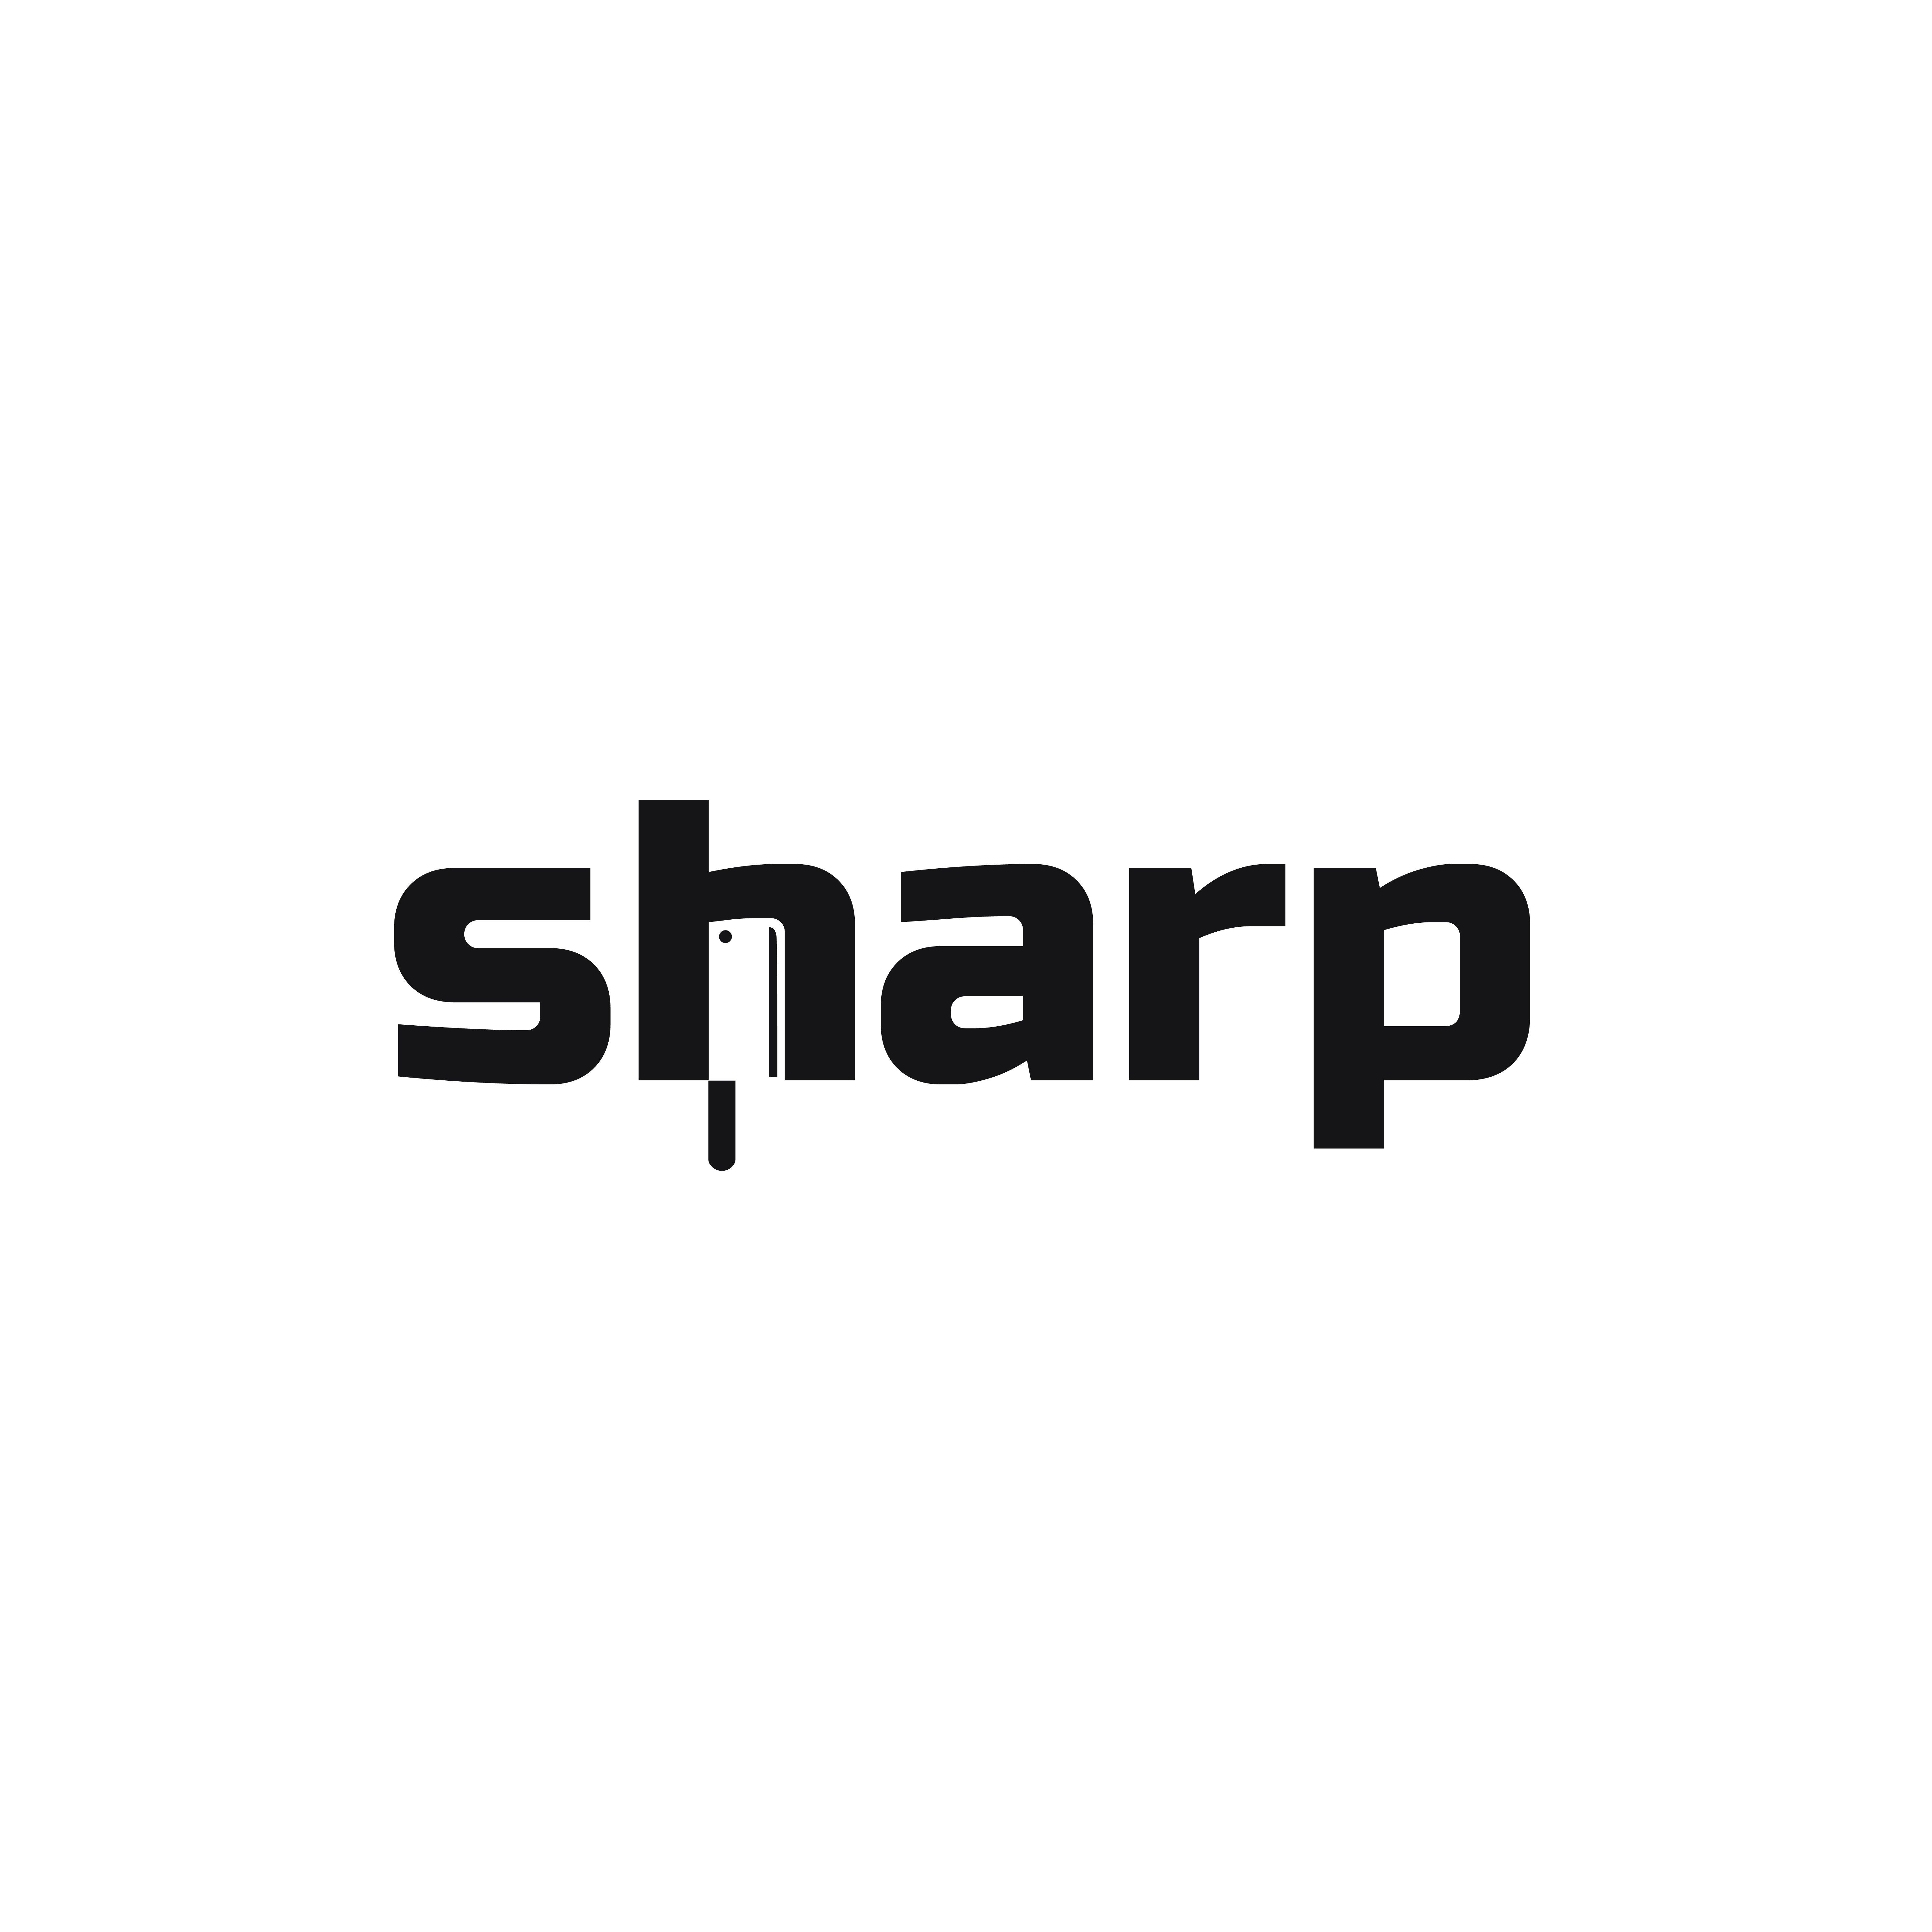 Sharp Logo - sharp logo negative space thirty logos | thirty logos | Logos, Sharp ...